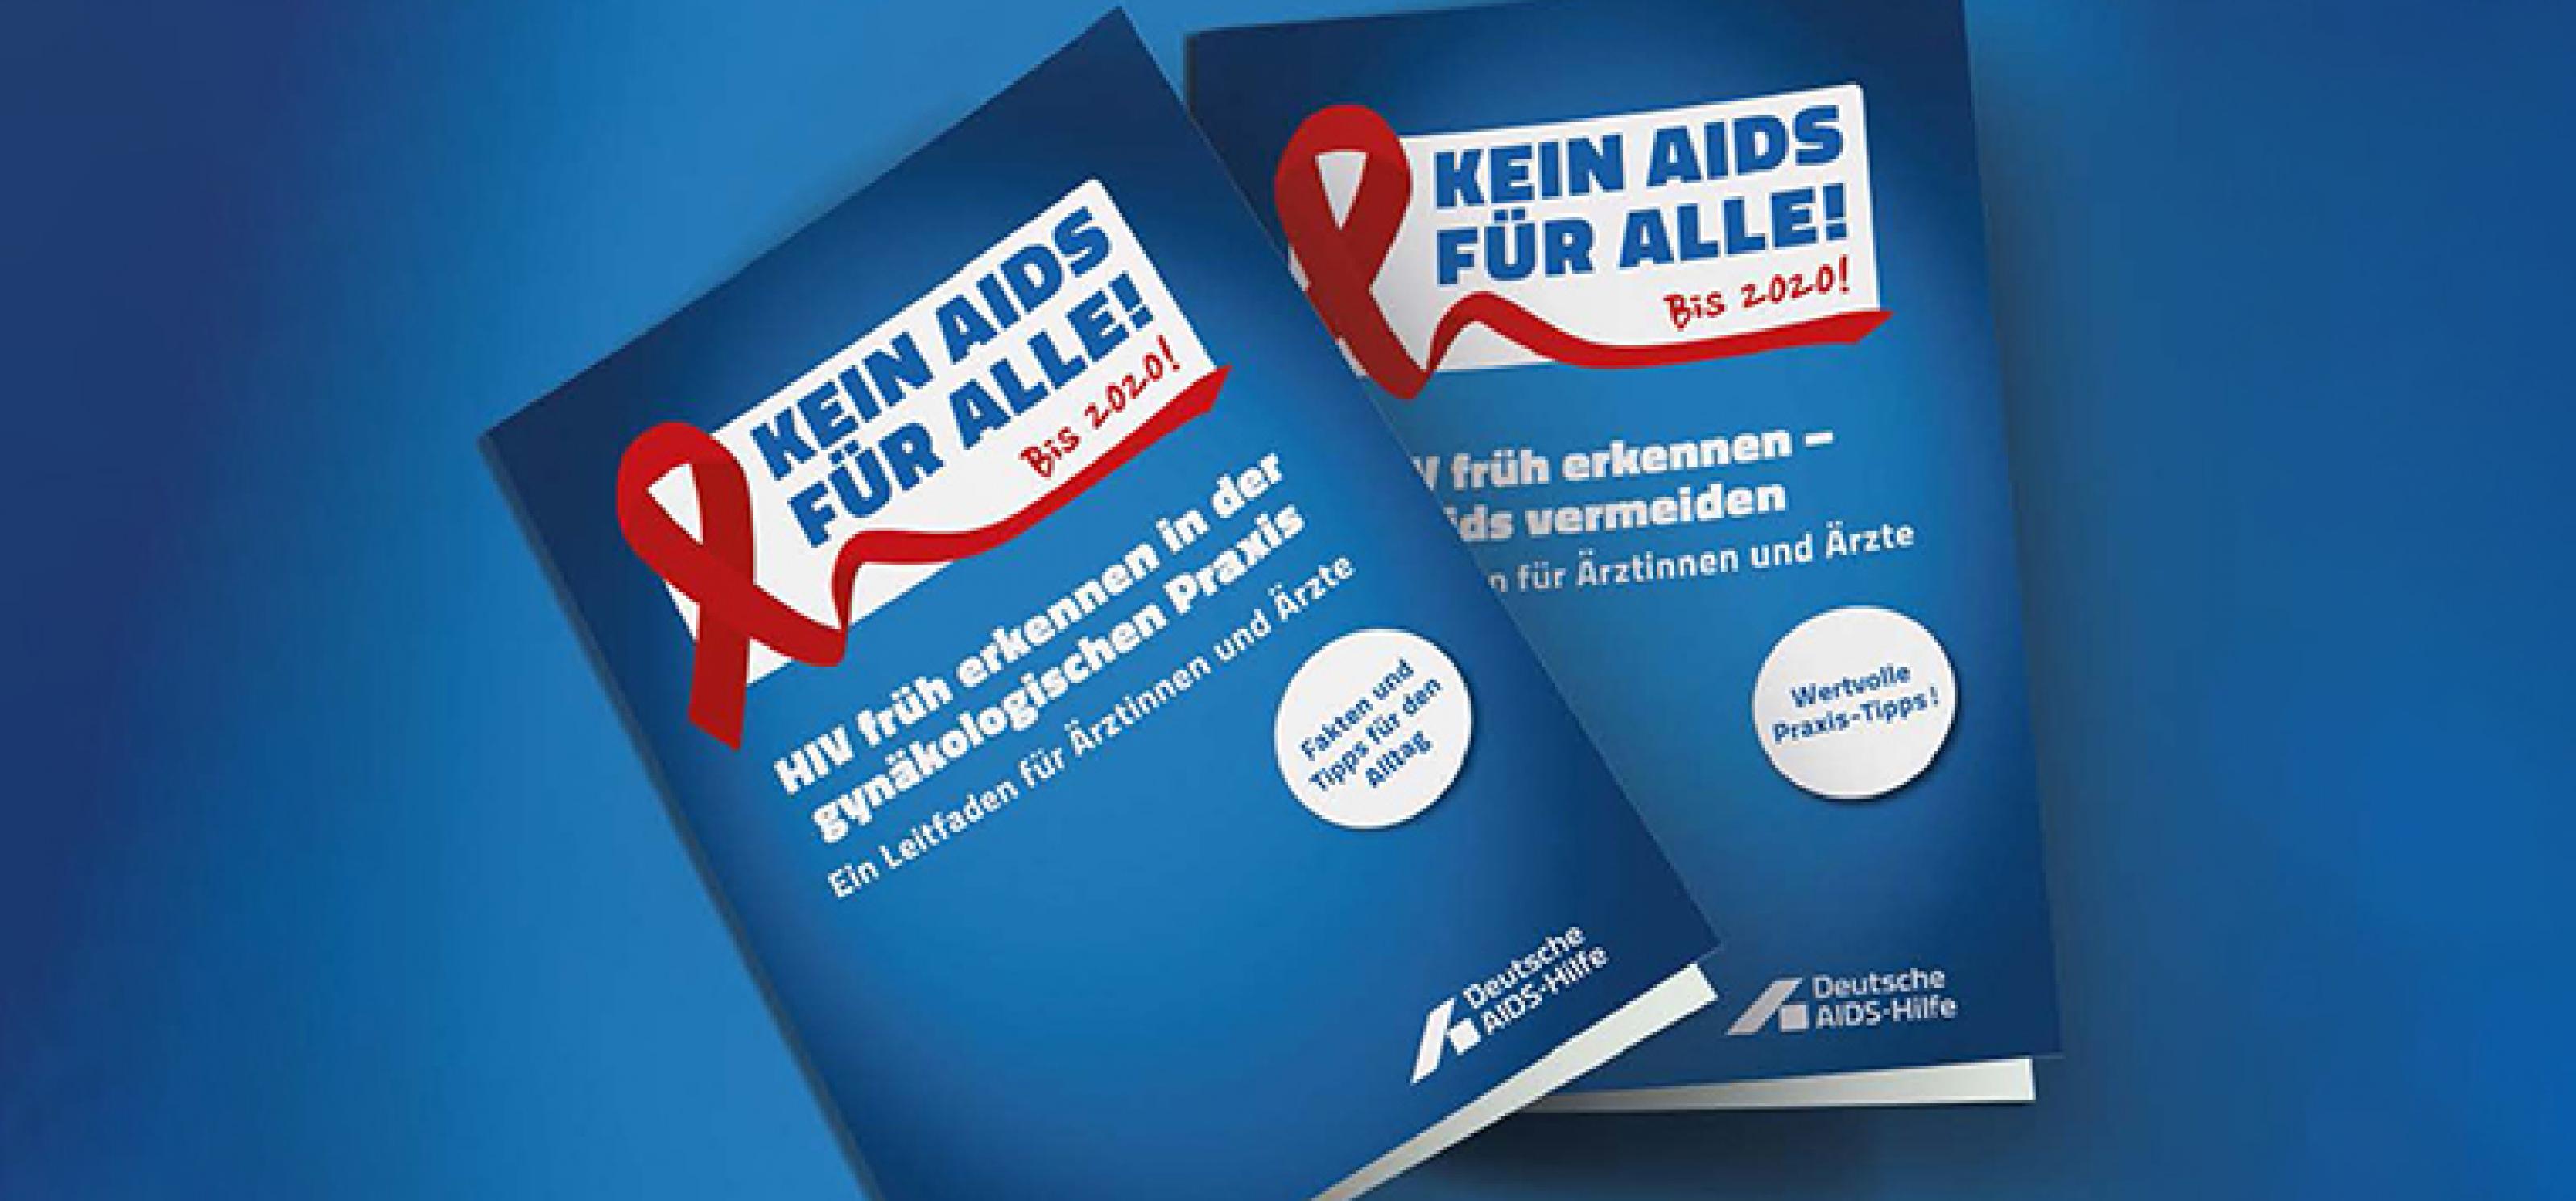 Broschüre mit dem Titel „HIV früh erkennen in der gynäkologischen Praxis" um HIV bei Frauen früher zu entdecken